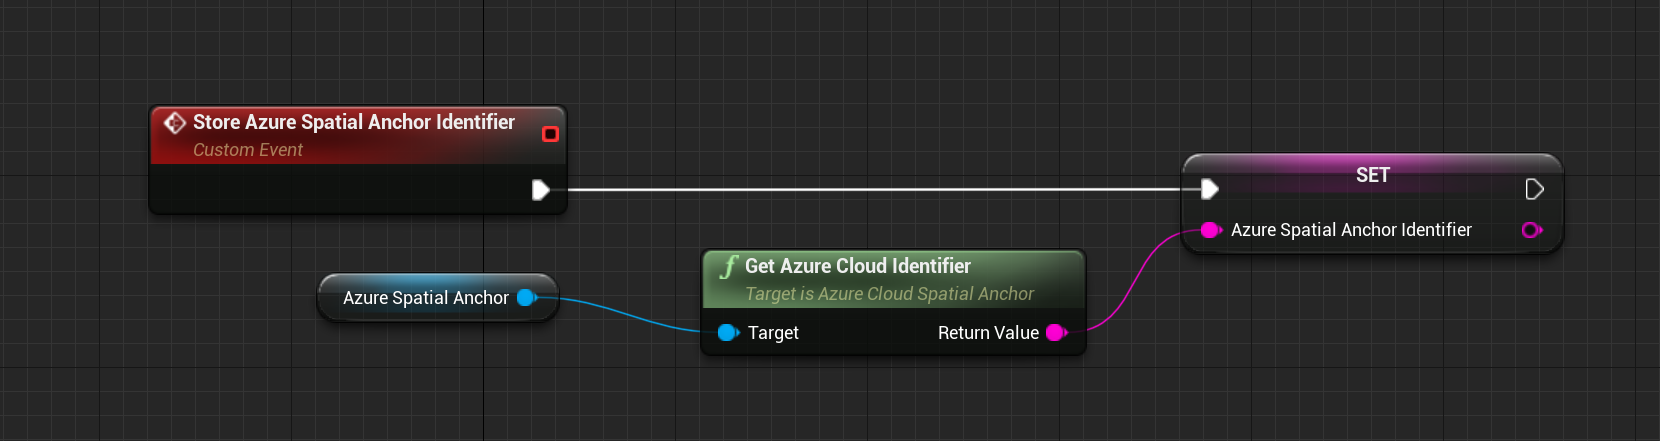 Plano técnico del evento personalizado de almacenamiento del identificador de Azure Spatial Anchors con la función de obtención del identificador de la nube de Azure